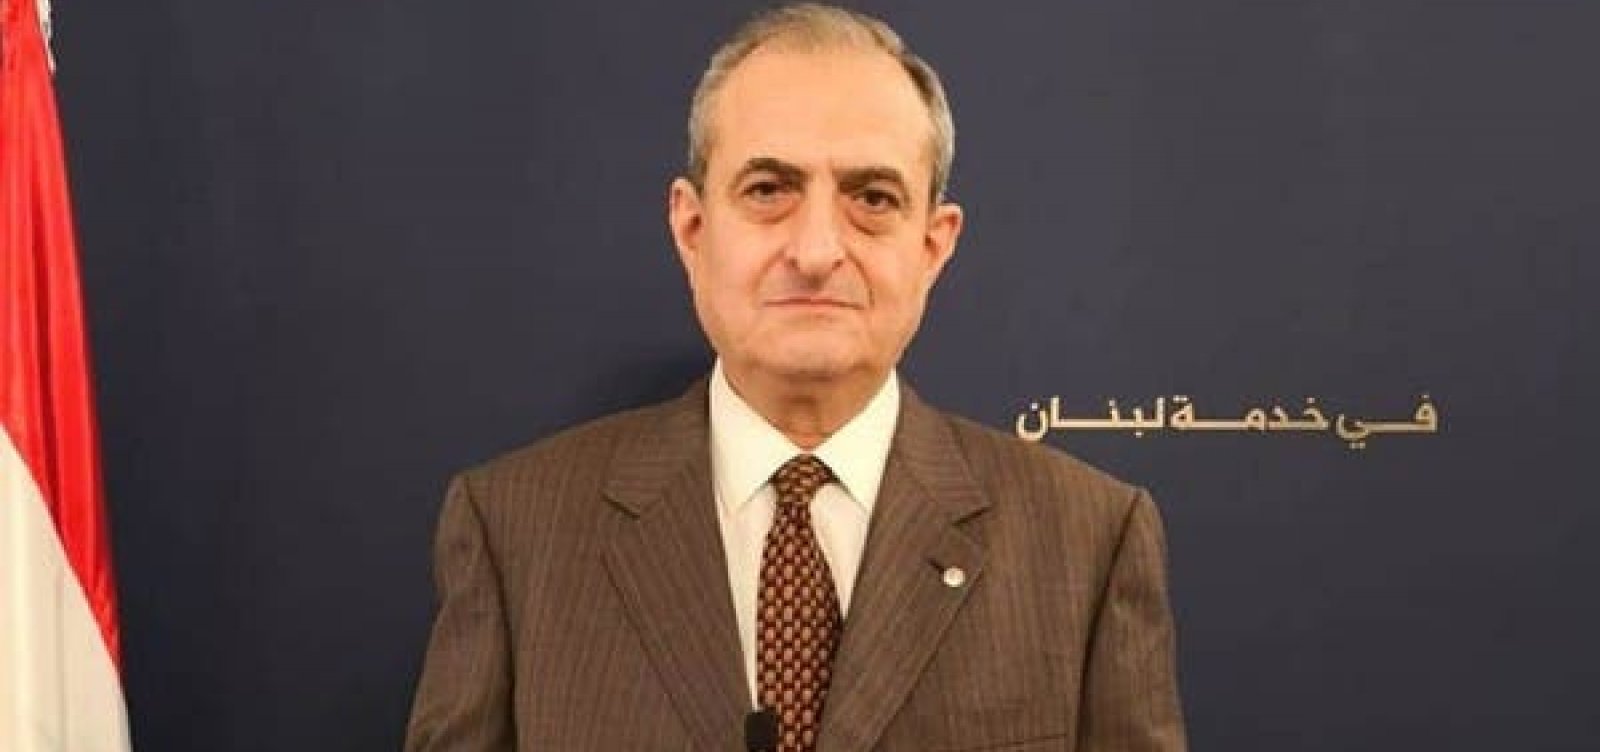 Após explosão, secretário-geral de partido libanês morre